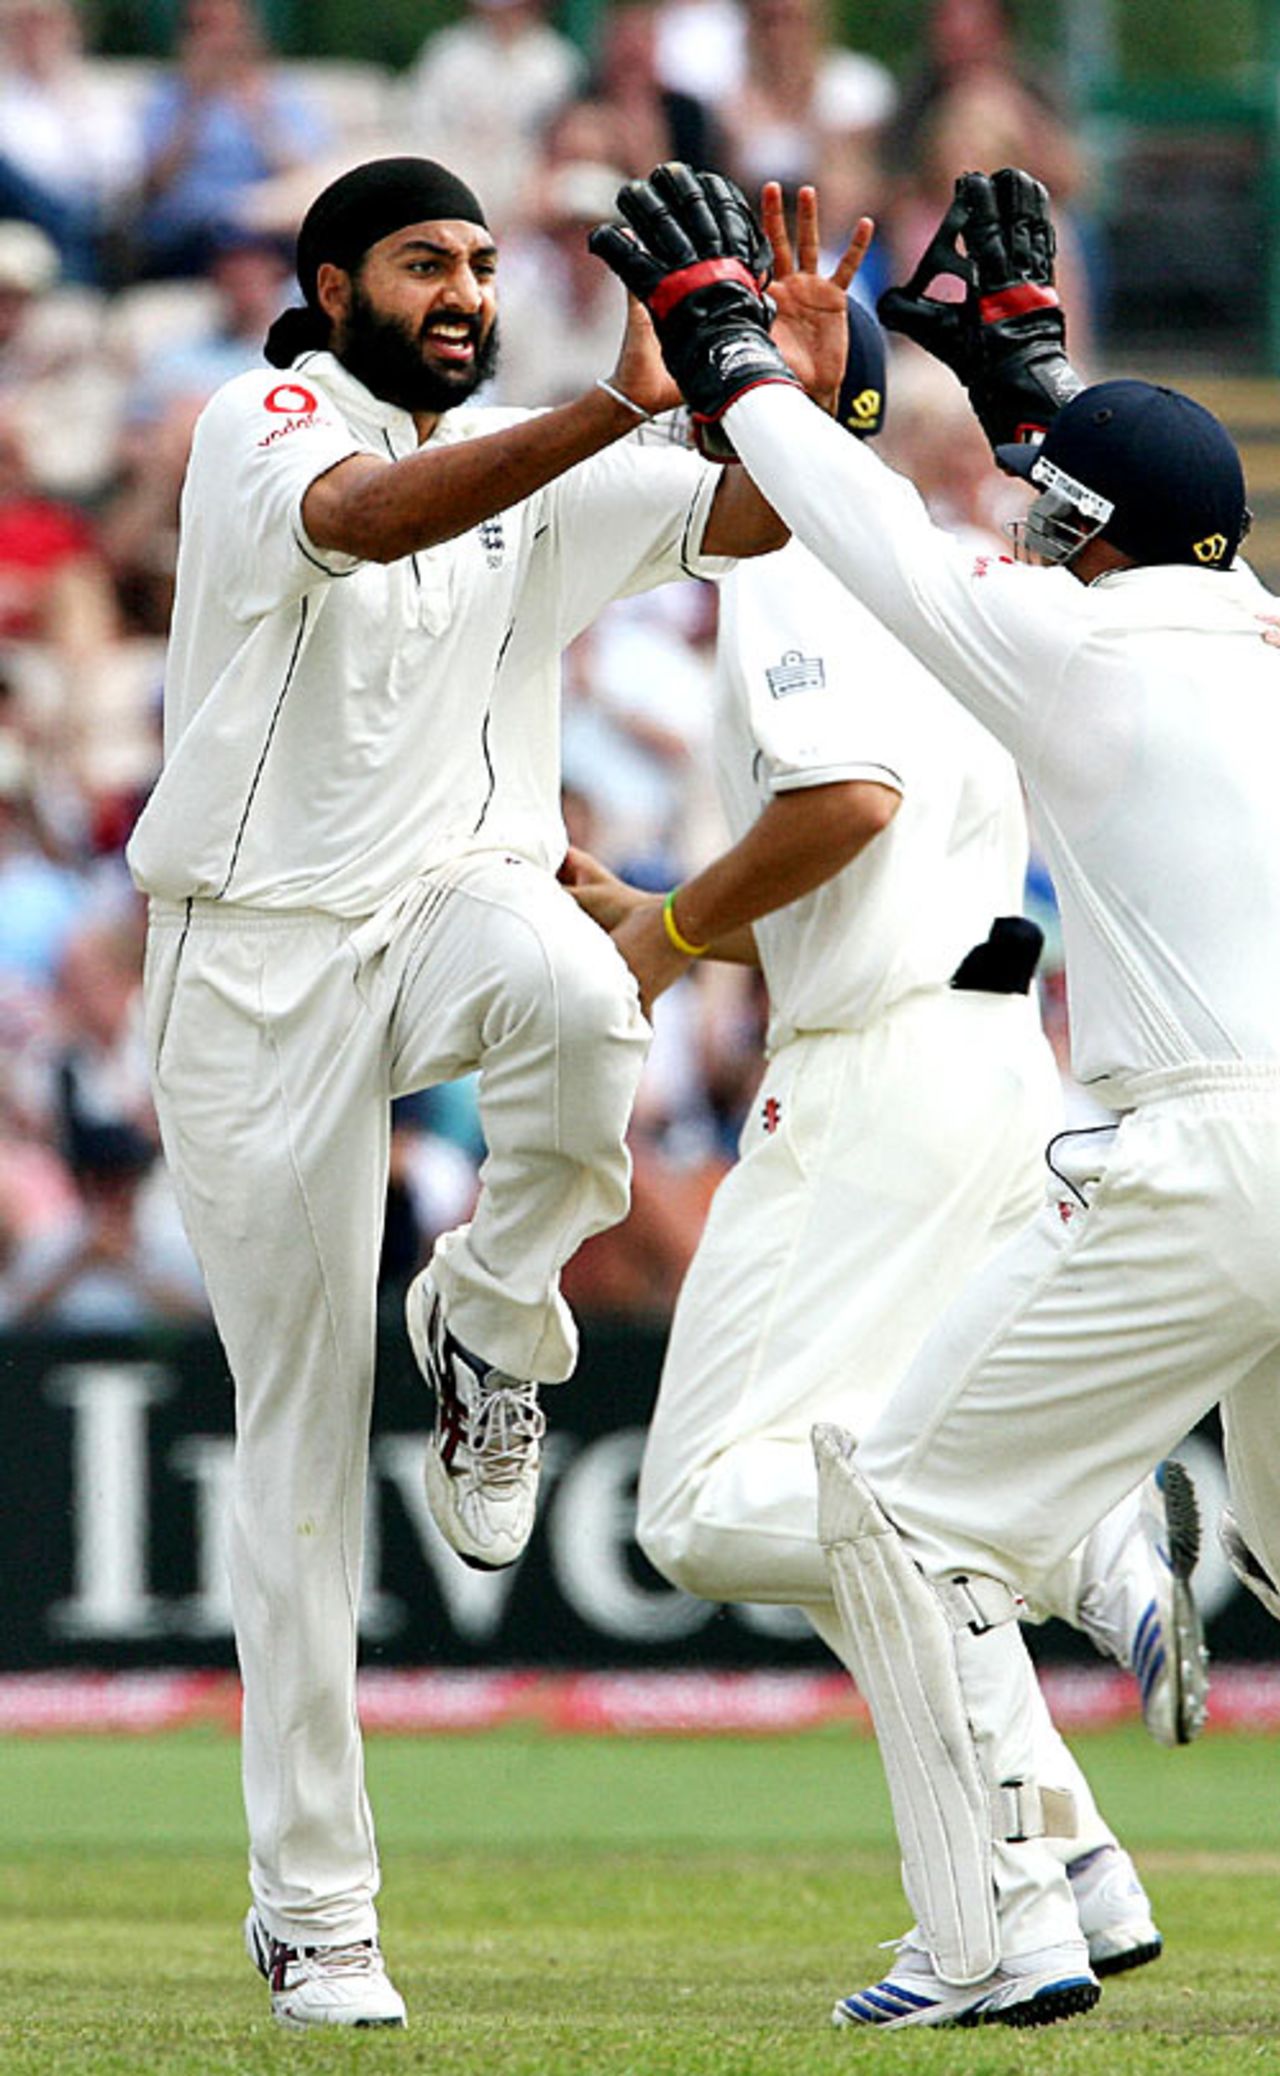 Monty Panesar hops and skips in jubilation after dismissing Devon Smith, England v West Indies, 3rd Test, Old Trafford, June 10, 2007